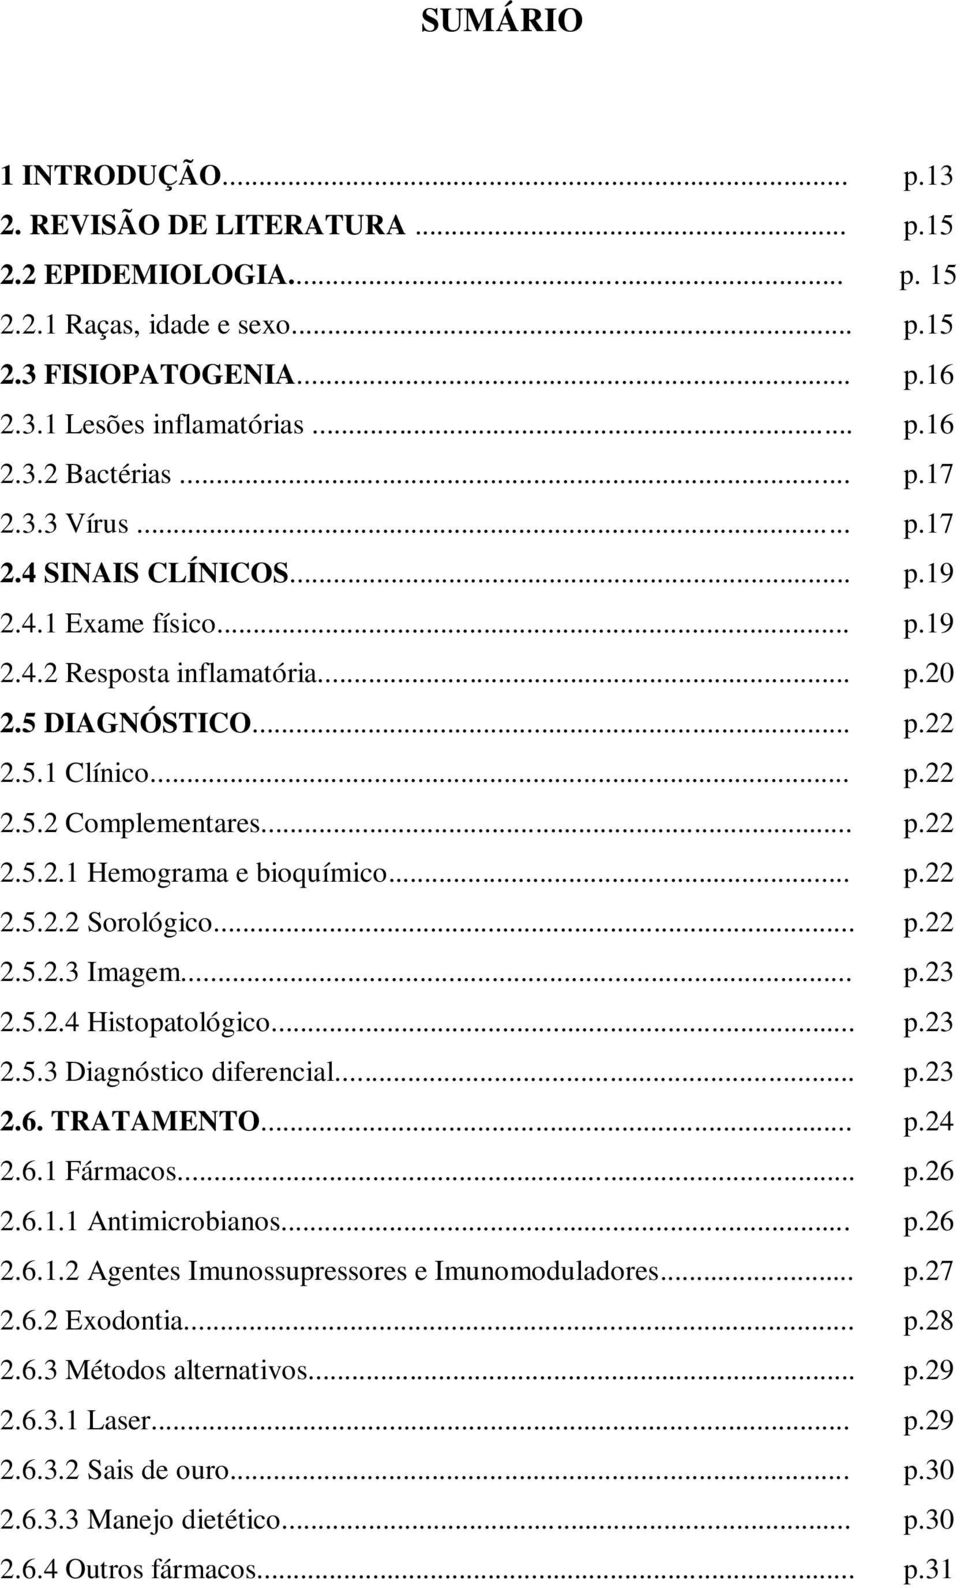 .. p.22 2.5.2.2 Sorológico... p.22 2.5.2.3 Imagem... p.23 2.5.2.4 Histopatológico... p.23 2.5.3 Diagnóstico diferencial... p.23 2.6. TRATAMENTO... p.24 2.6.1 Fármacos... p.26 2.6.1.1 Antimicrobianos.